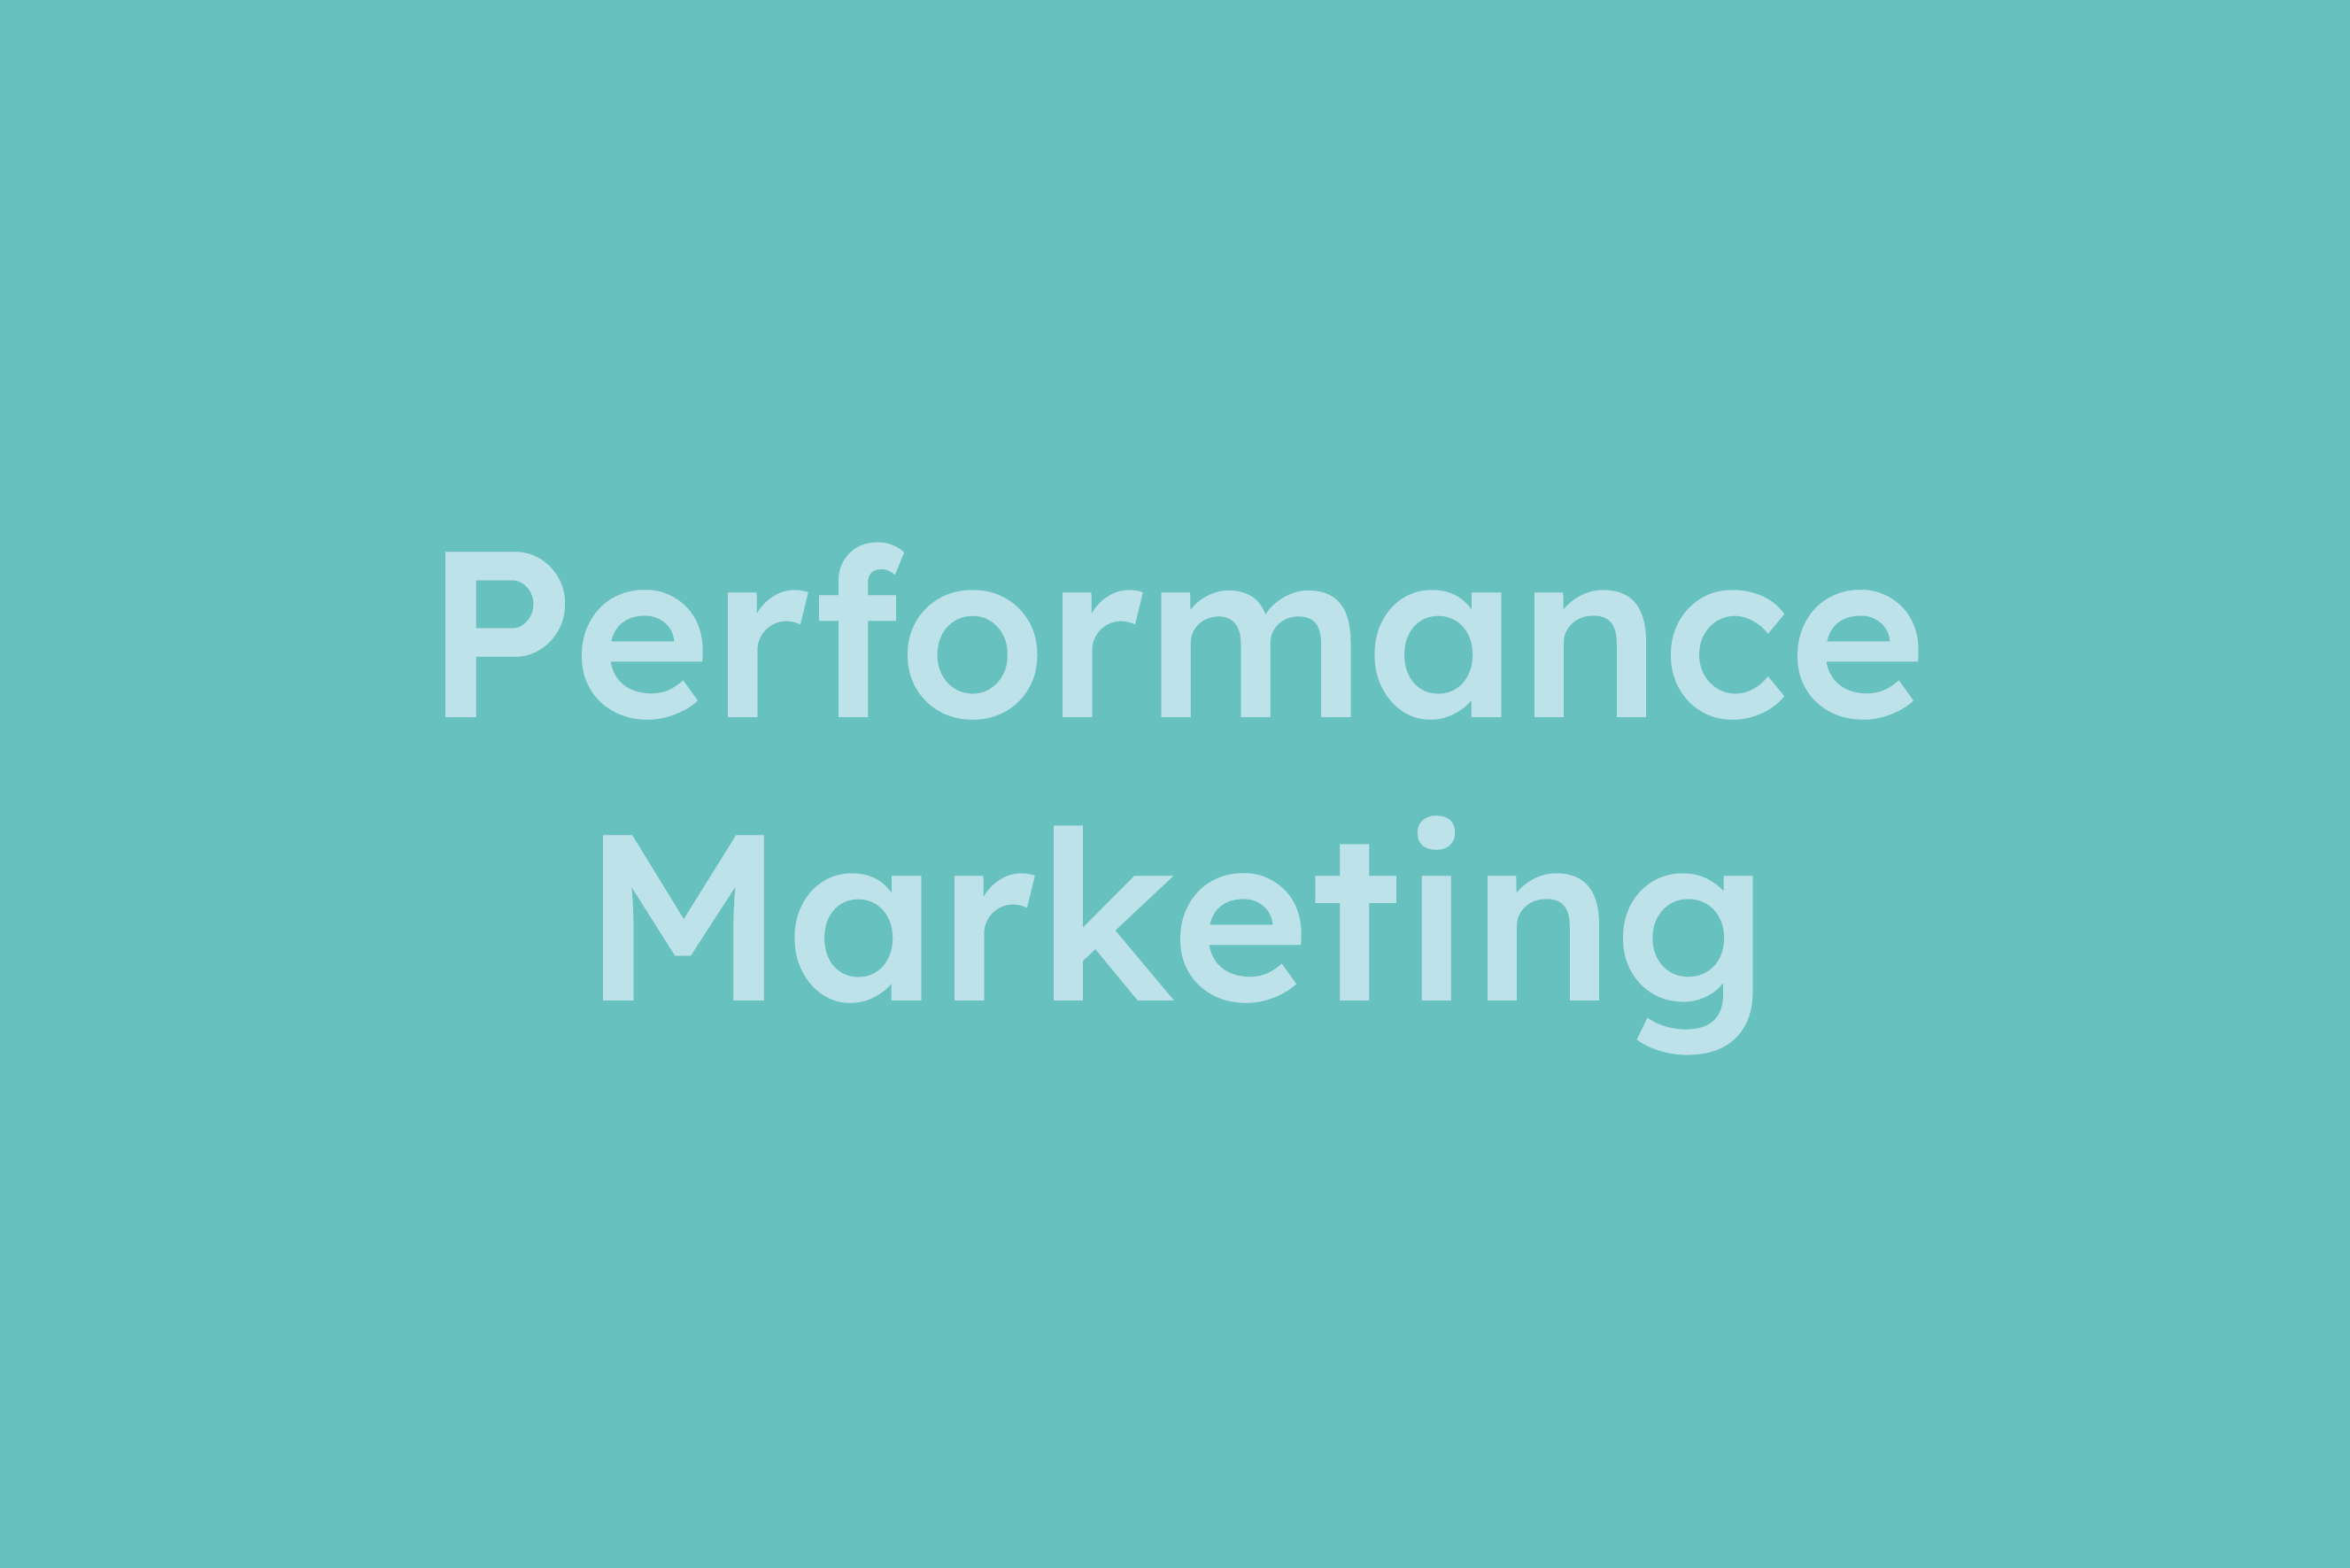 Performance Marketing erklärt im Glossar von Campaign